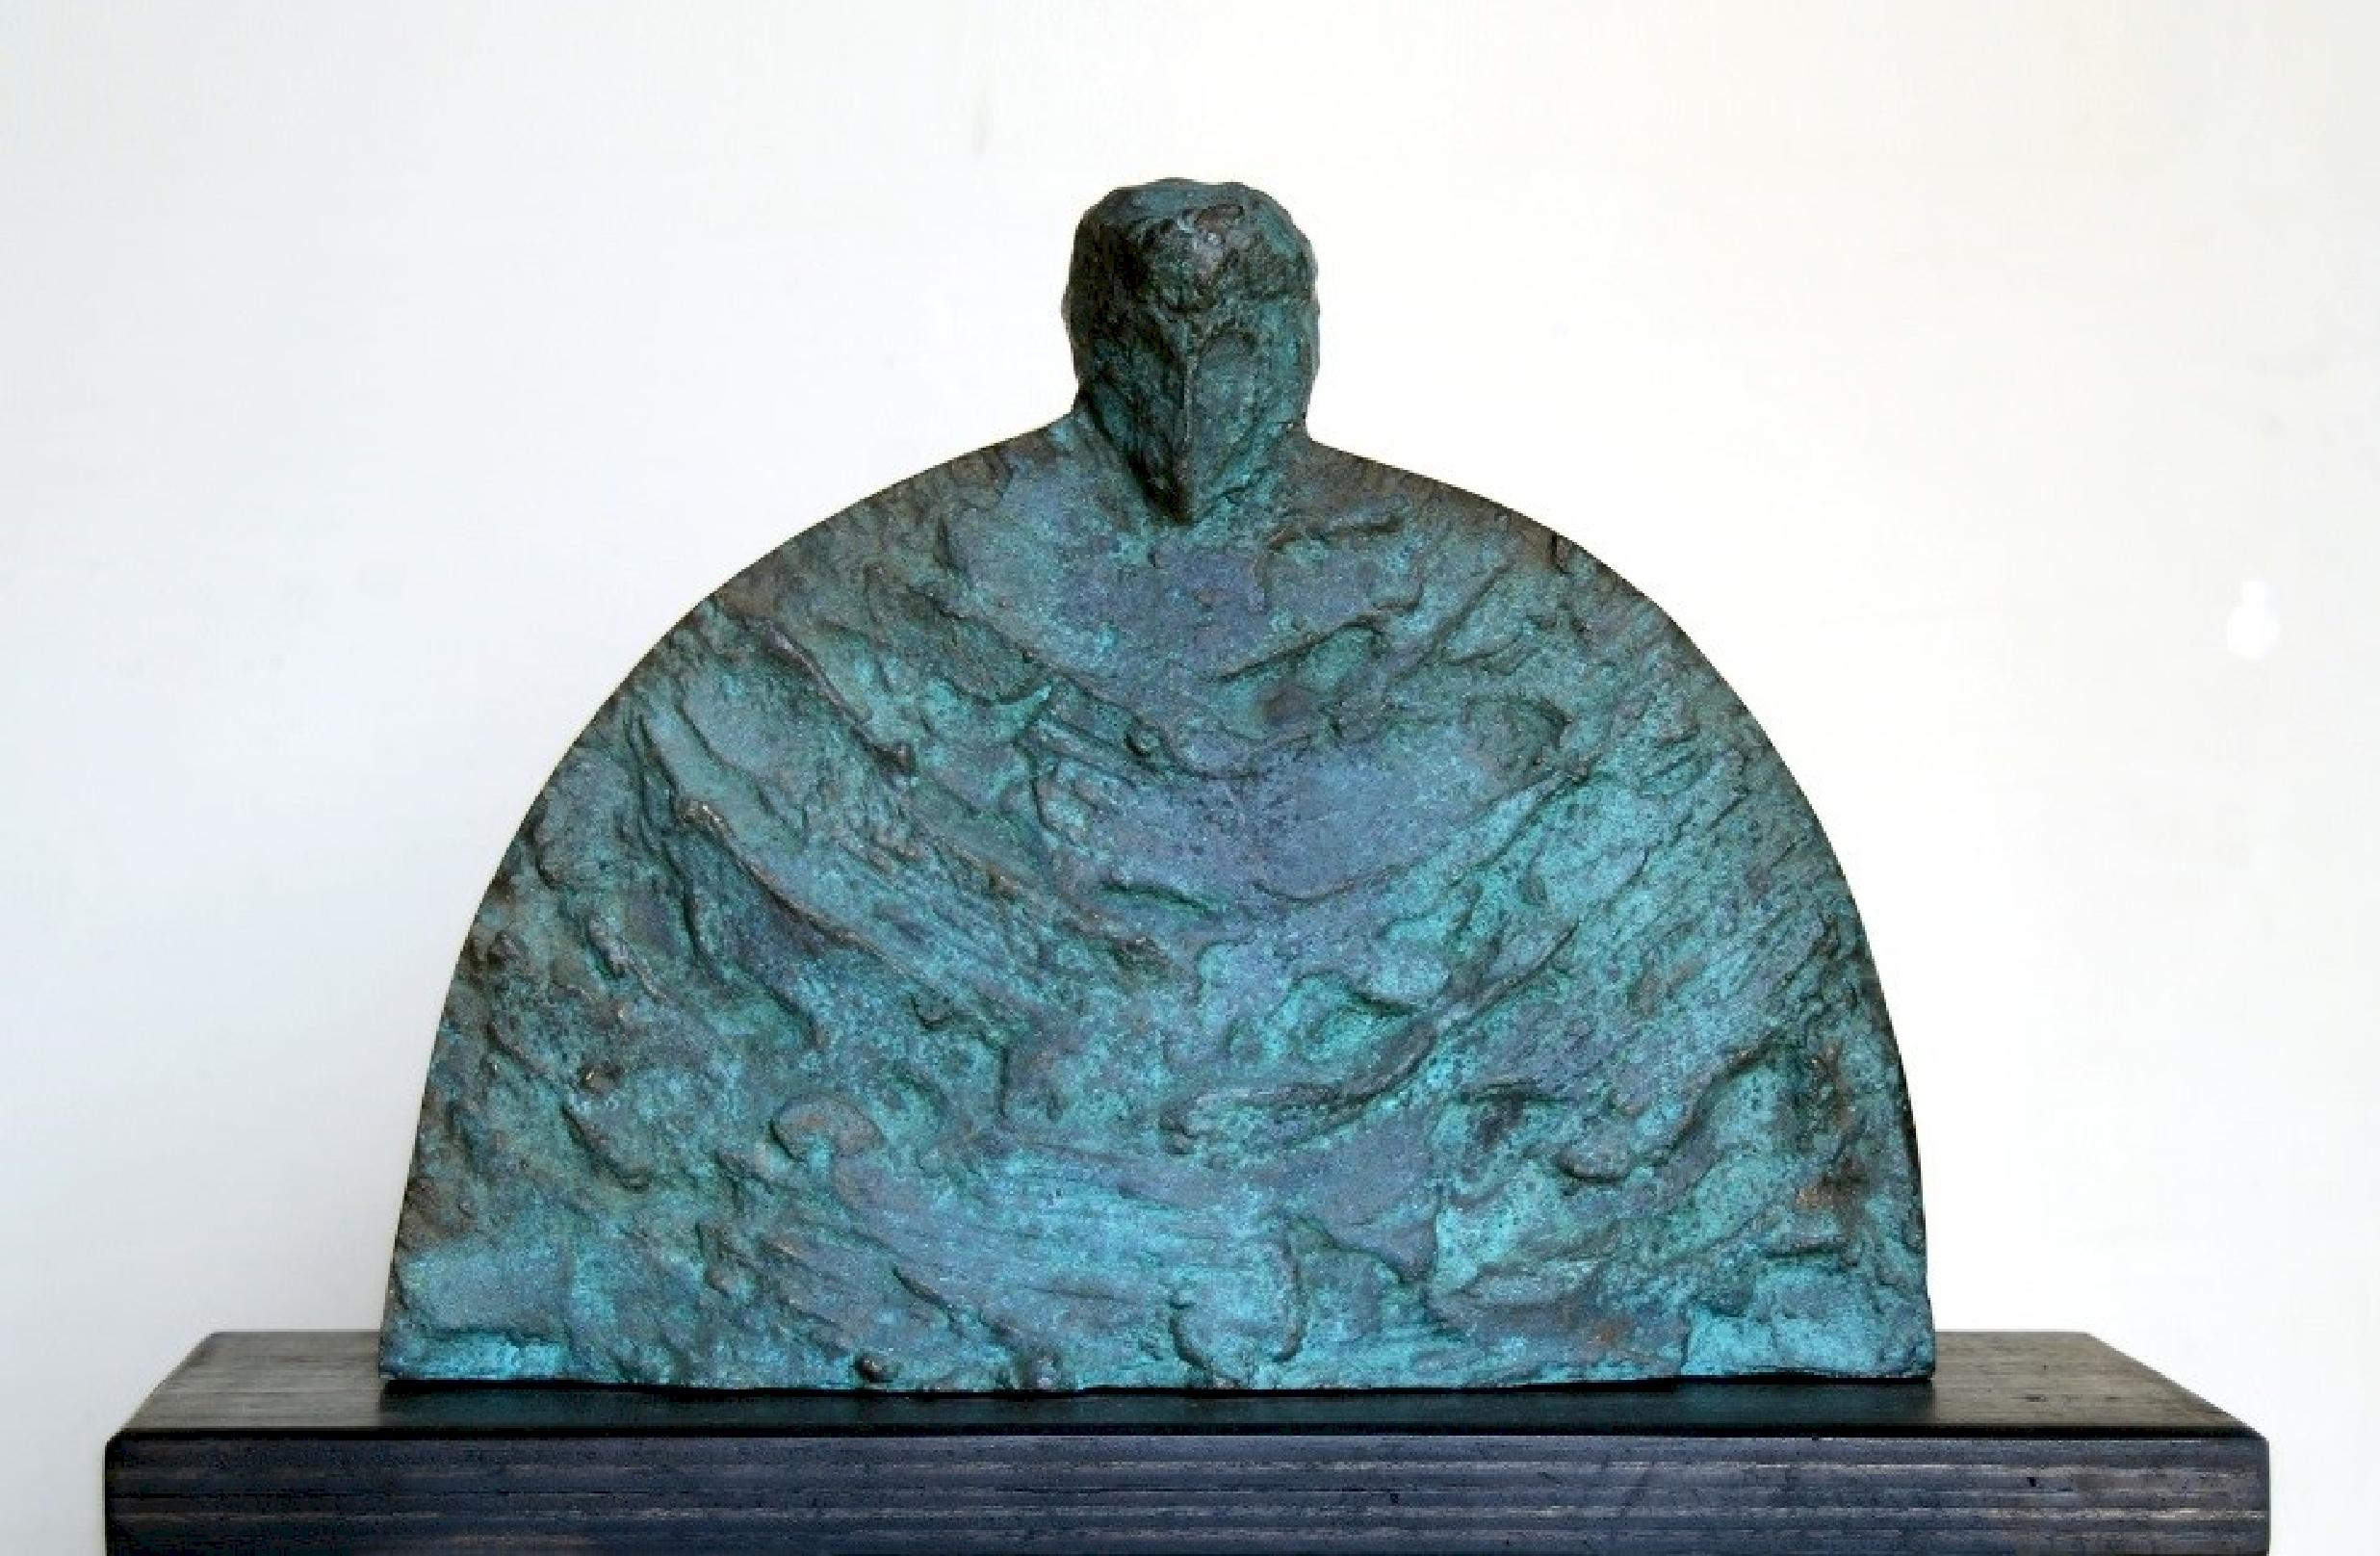 Sculpture en bronze 11" x 14" x 5" pouces par Sarkis Tossonian

Sarkis Tossoonian est né à Alexandrie en 1953. Il est diplômé de la Faculté des Beaux-Arts/Sculpture en 1979. Il a commencé à exposer dans des expositions individuelles et collectives à